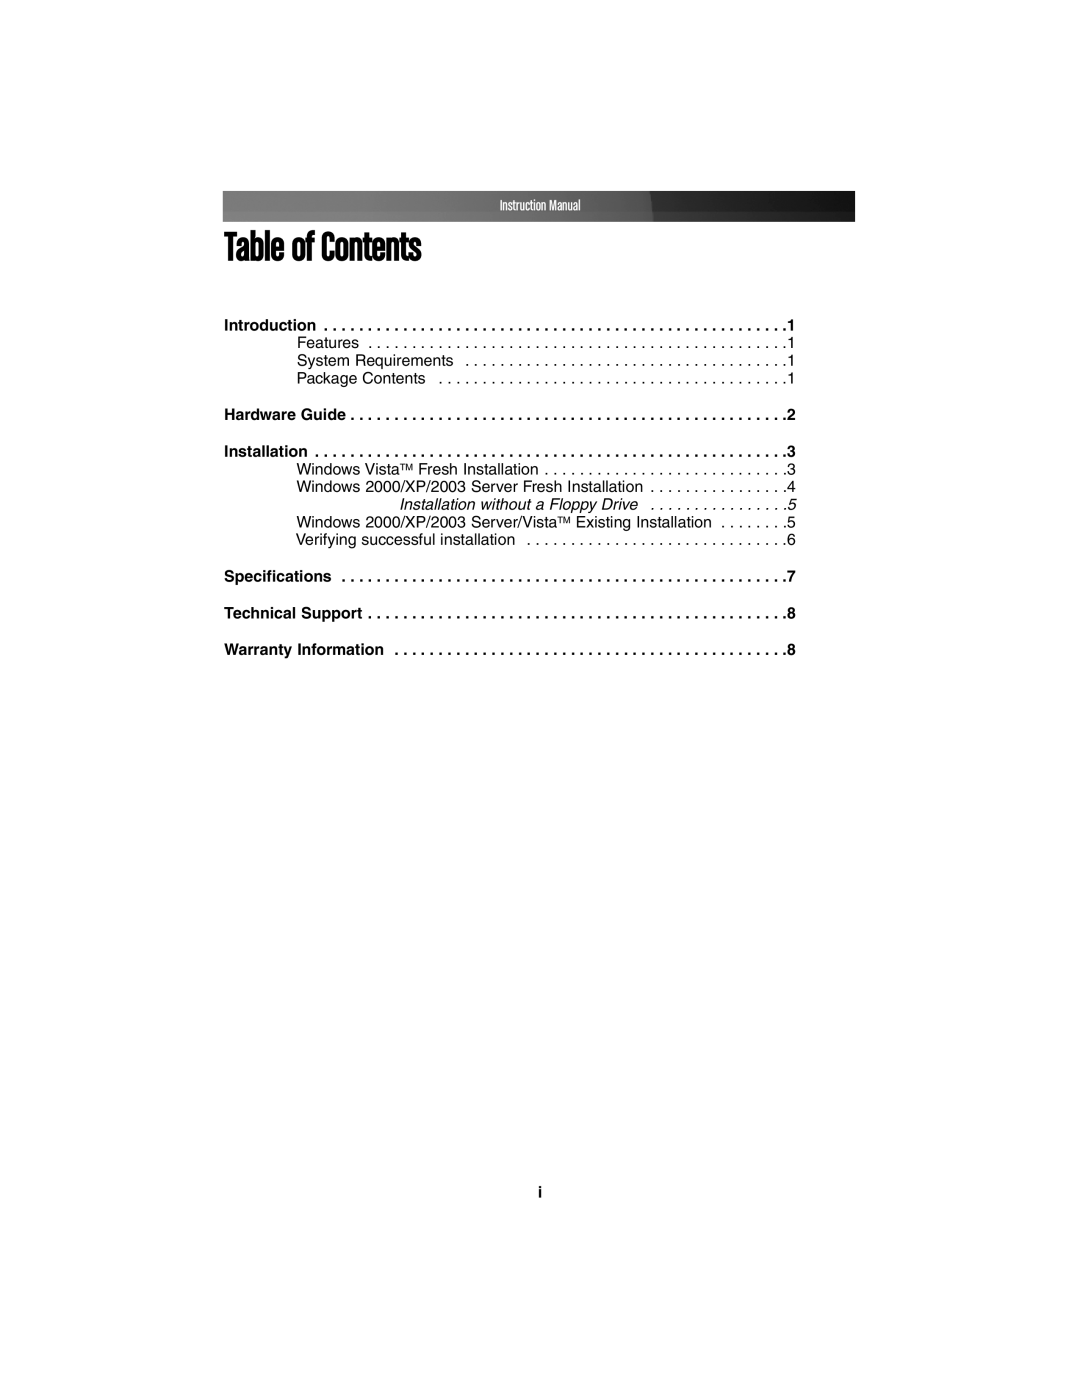 StarTech.com PEXSATA24E instruction manual Table of Contents, Instruction Manual, Introduction, Hardware Guide 